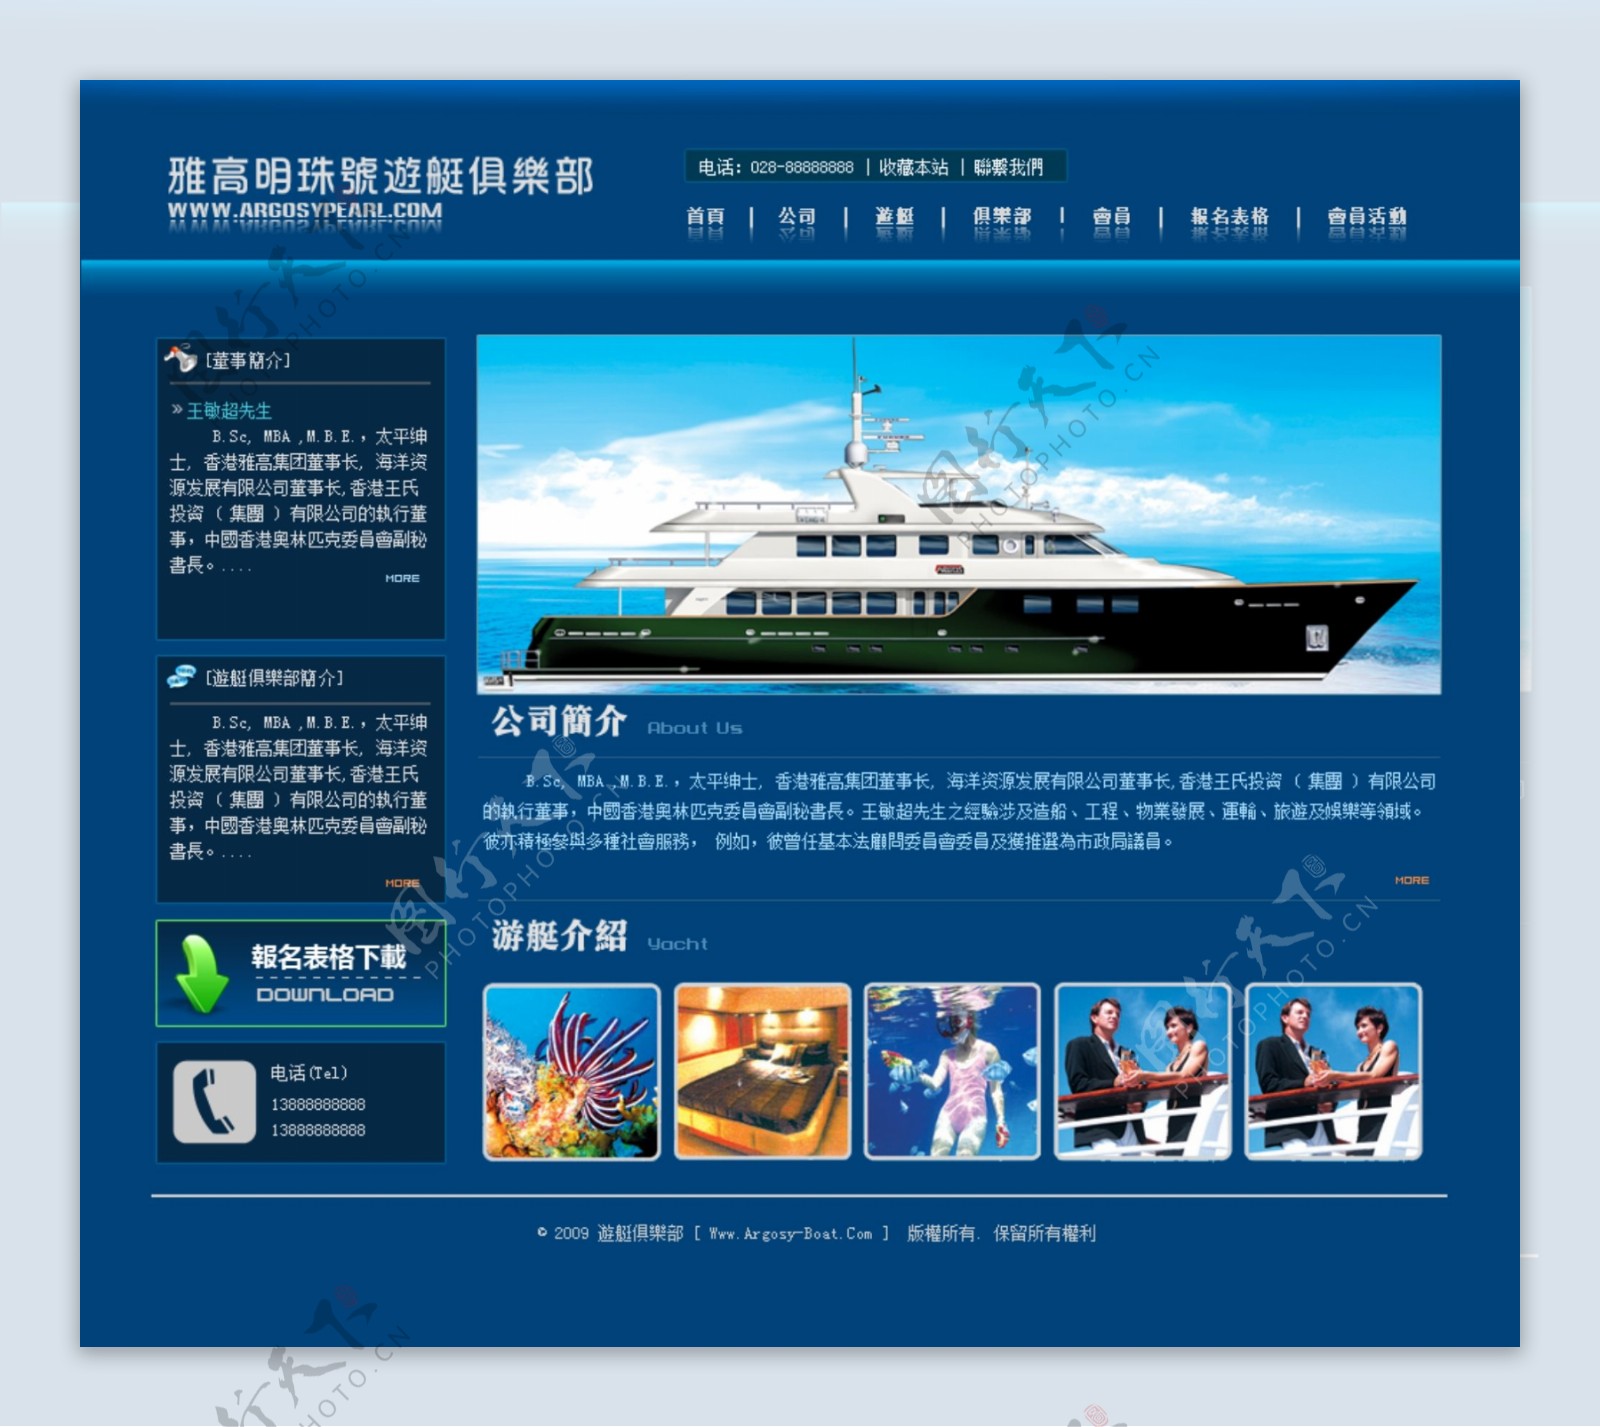 雅高明珠号游艇俱乐部网站首页图片